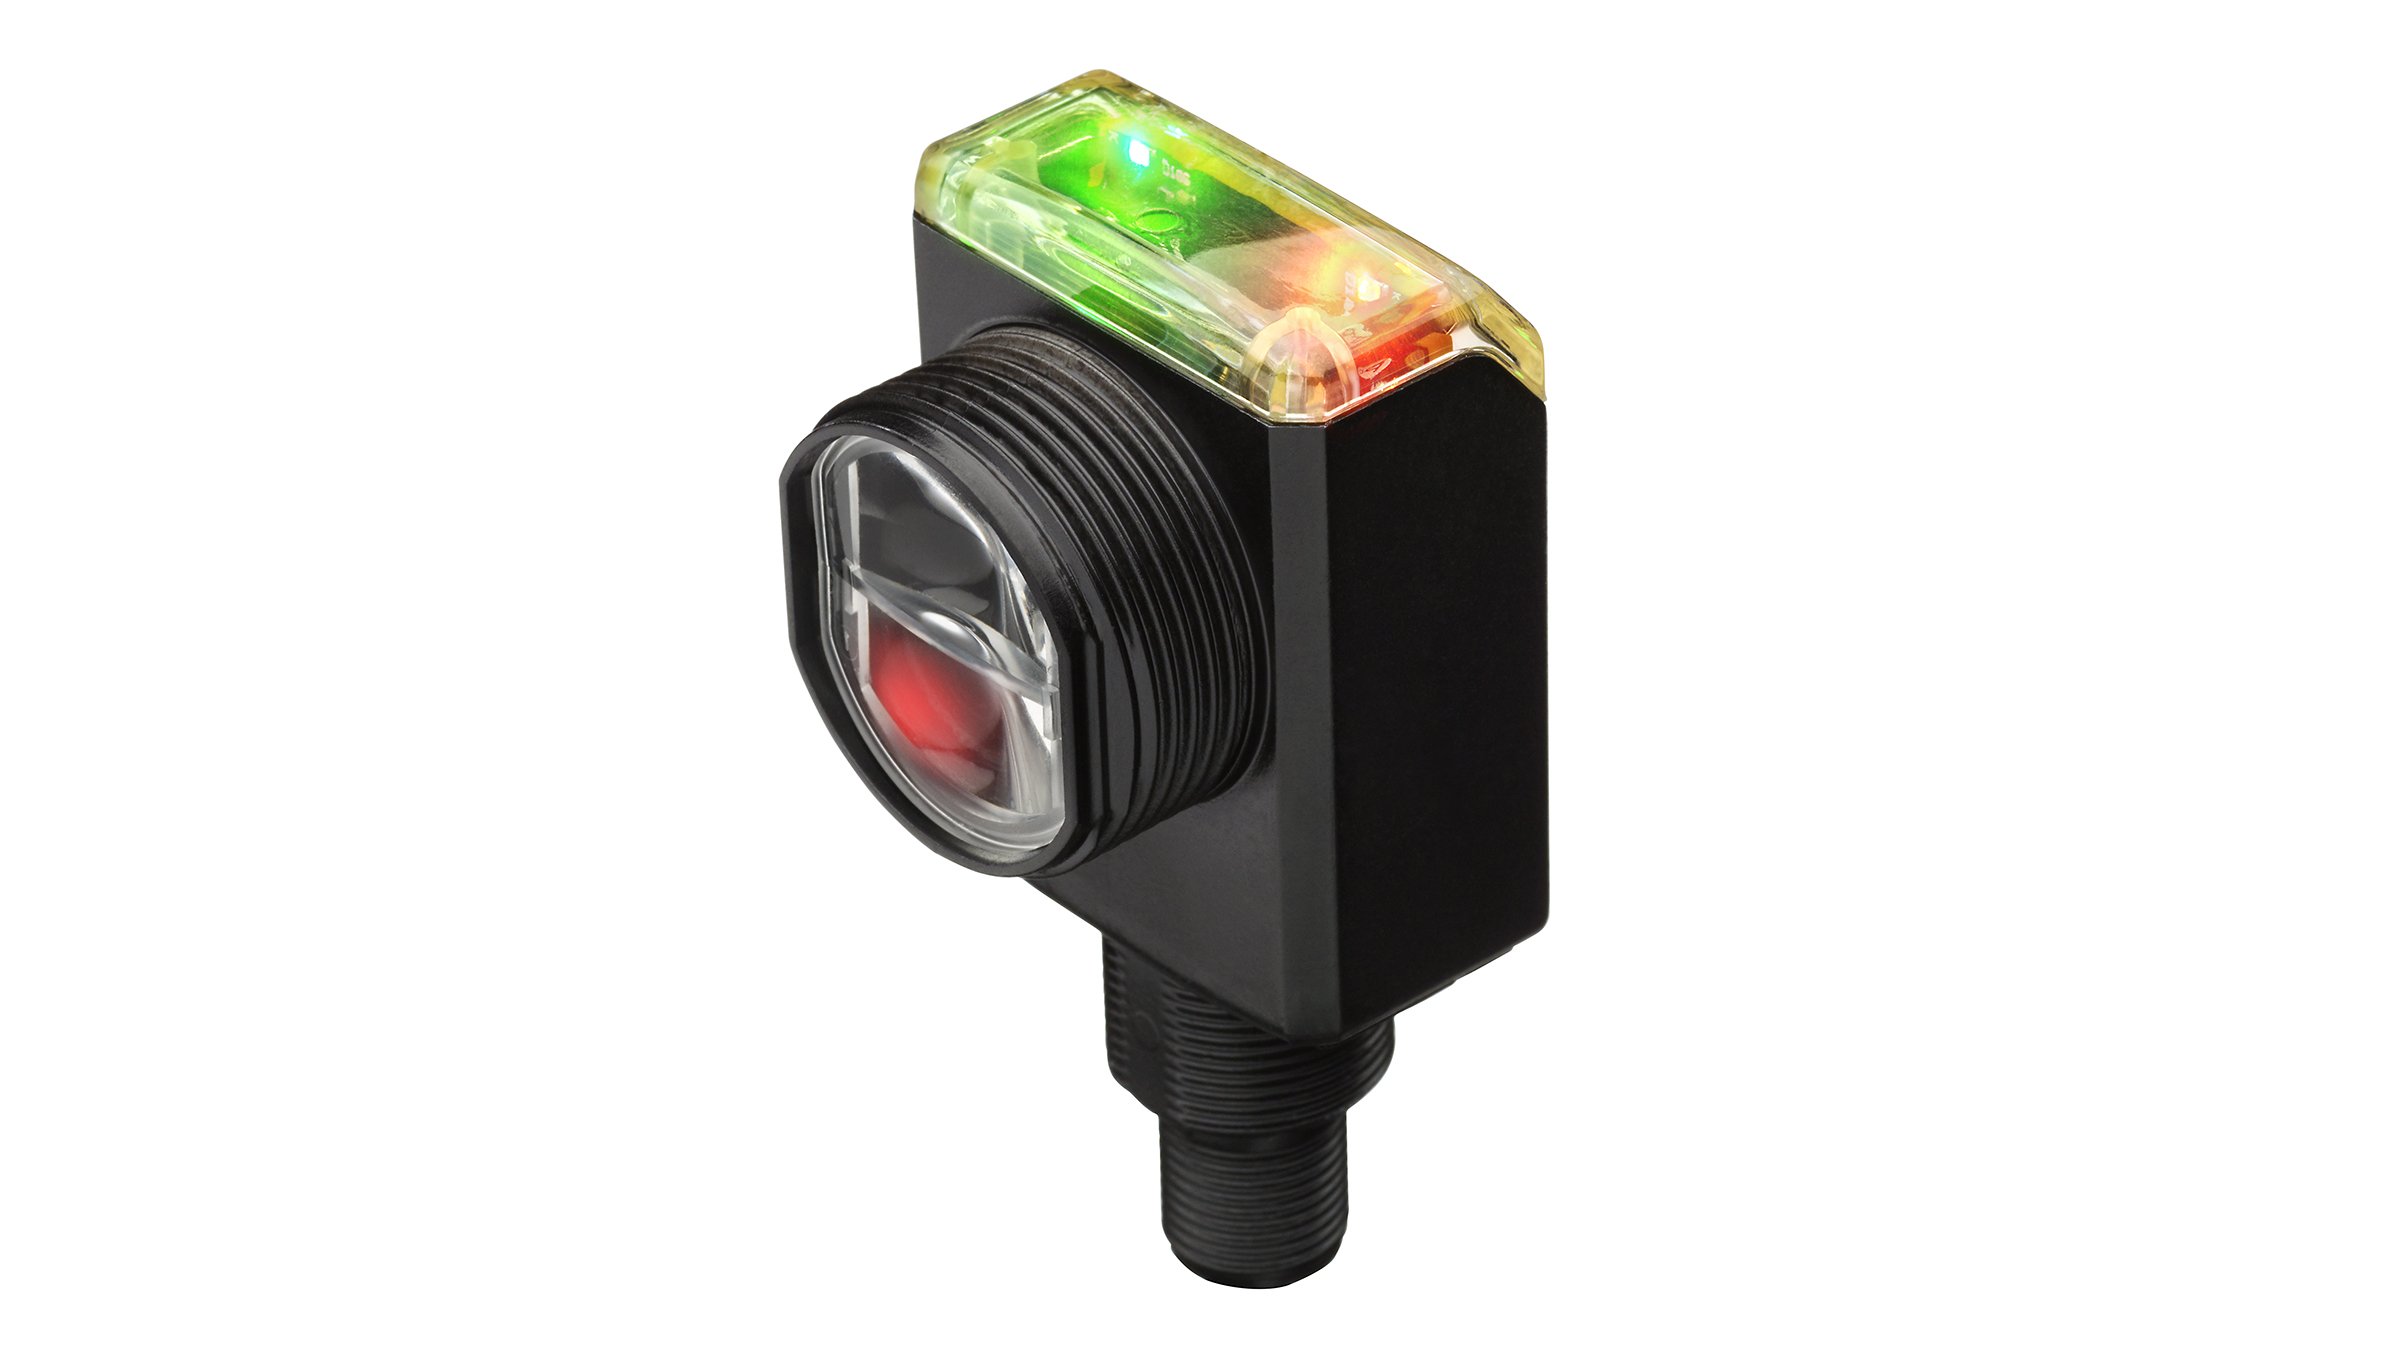 Détecteur noir, rectangulaire, avec tête de détection à l'avant et voyants DEL rouge et vert sur la partie supérieure